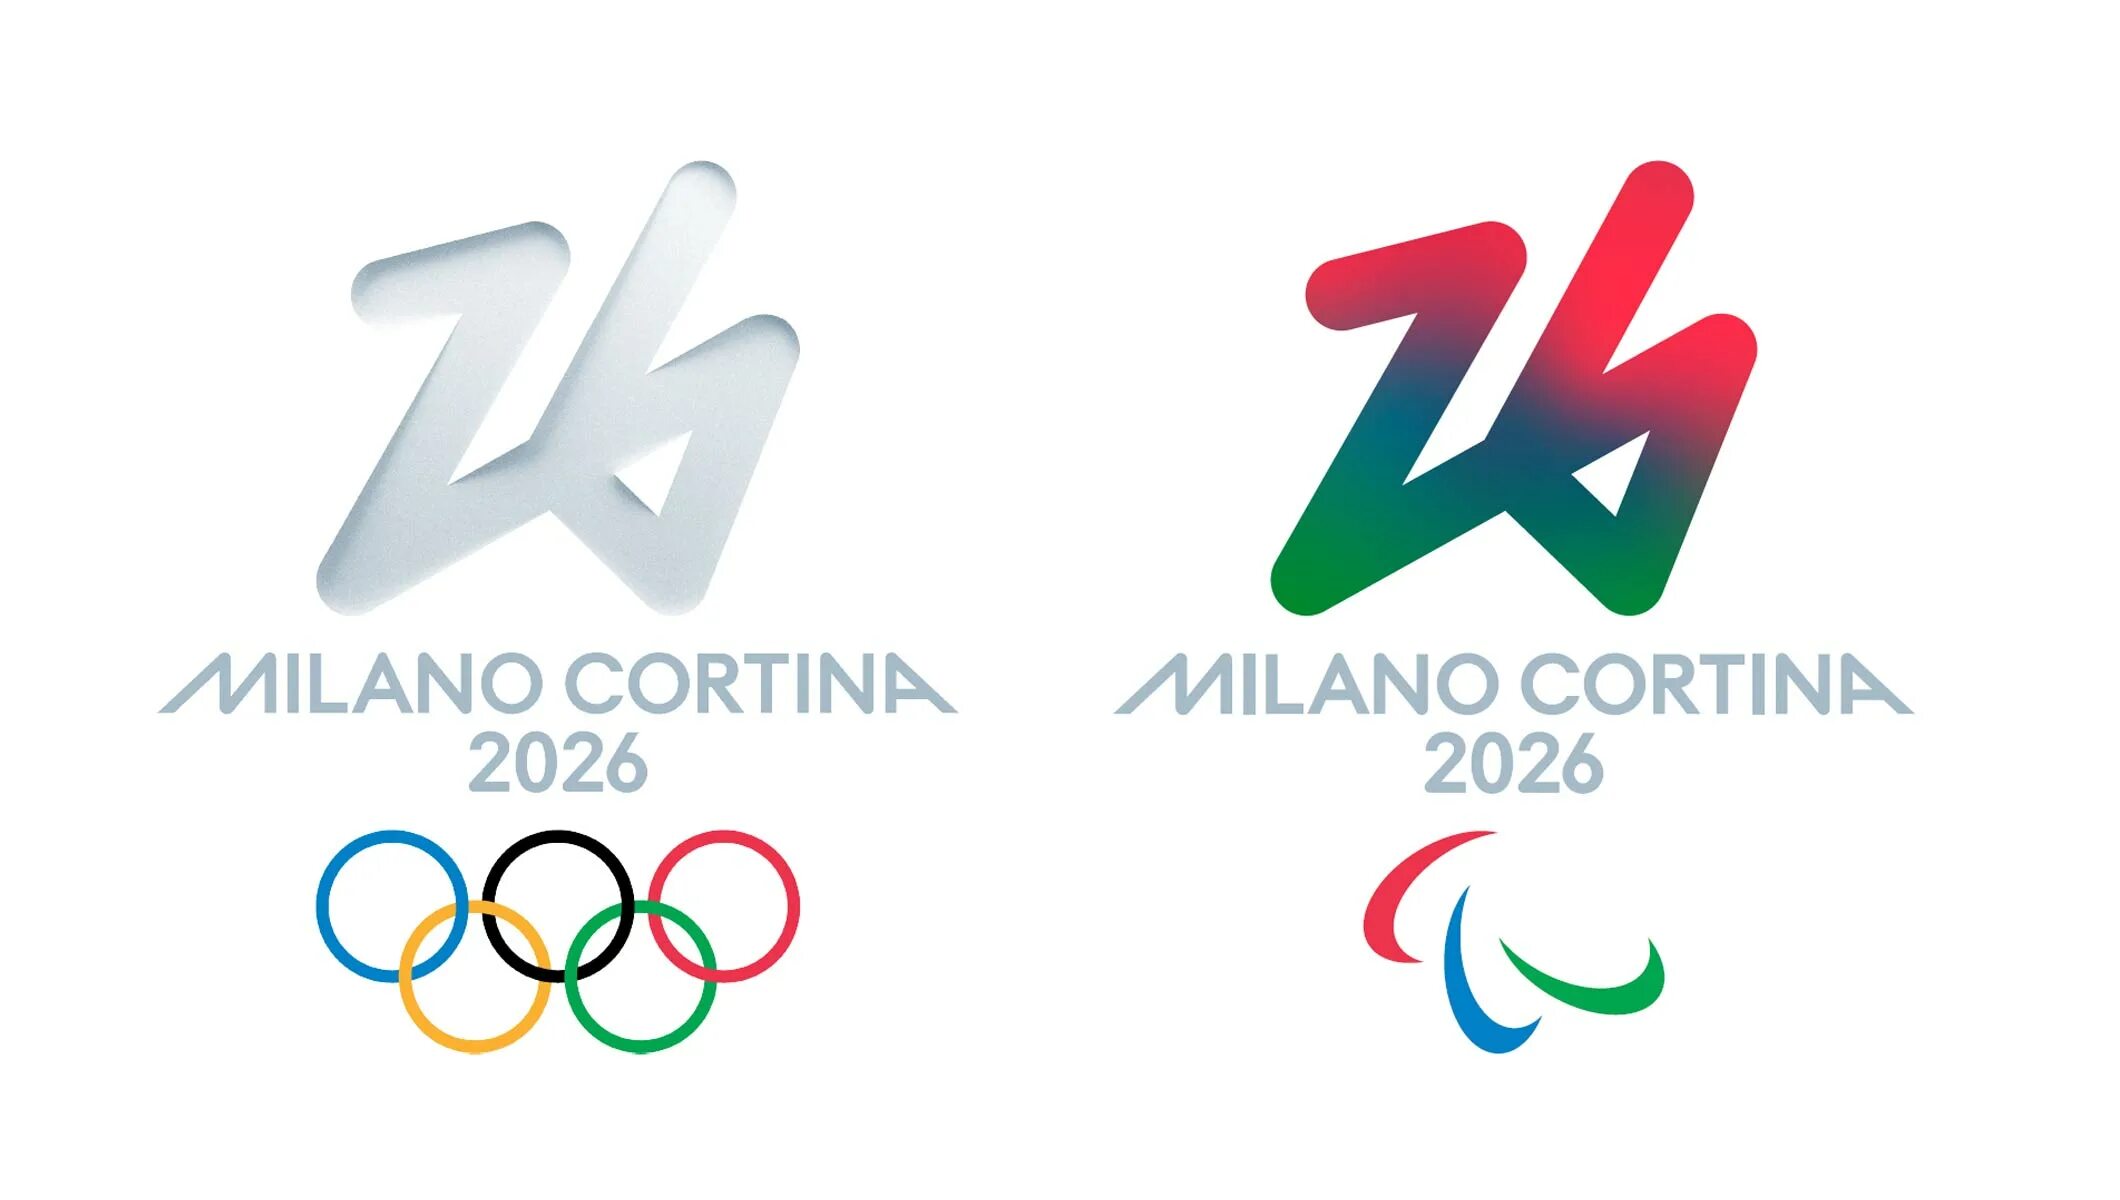 Игры 2026 где. Зимние Олимпийские игры 2026 года. Эмблема зимних Олимпийских игр 2026 года. Зимние Паралимпийские игры 2026. Символ олимпиады в Милане 2026.